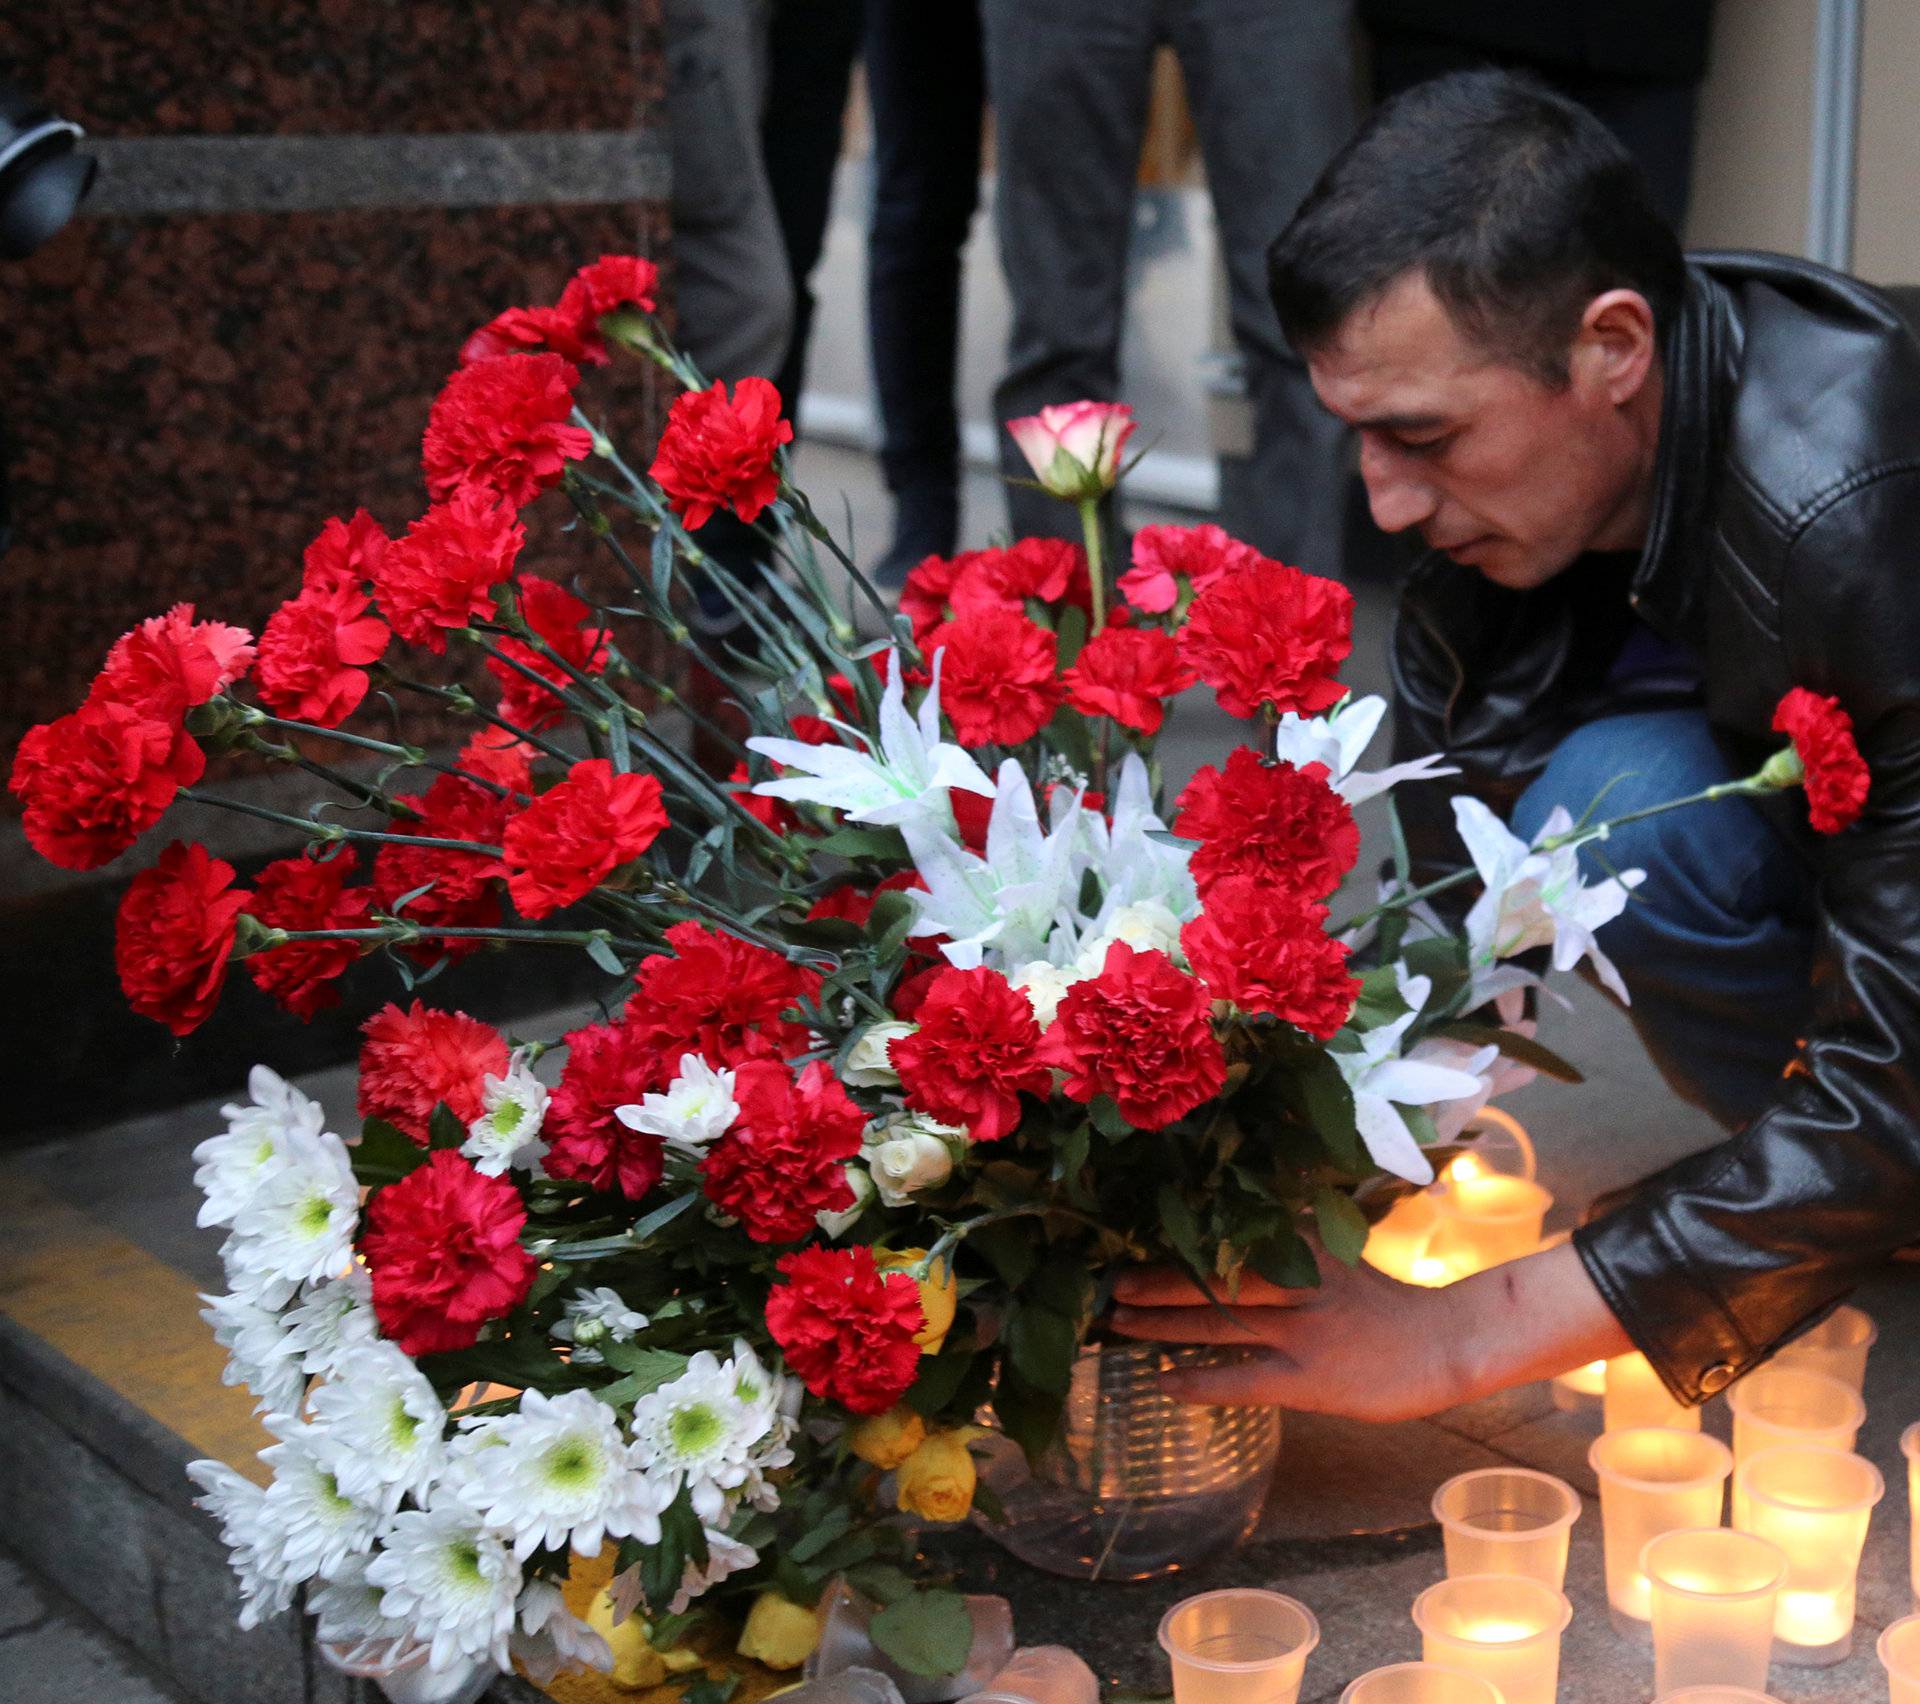 Man leaves flowers during memorial service for victims of blast in St.Petersburg metro, outside Sennaya Ploshchad metro station in St. Petersburg